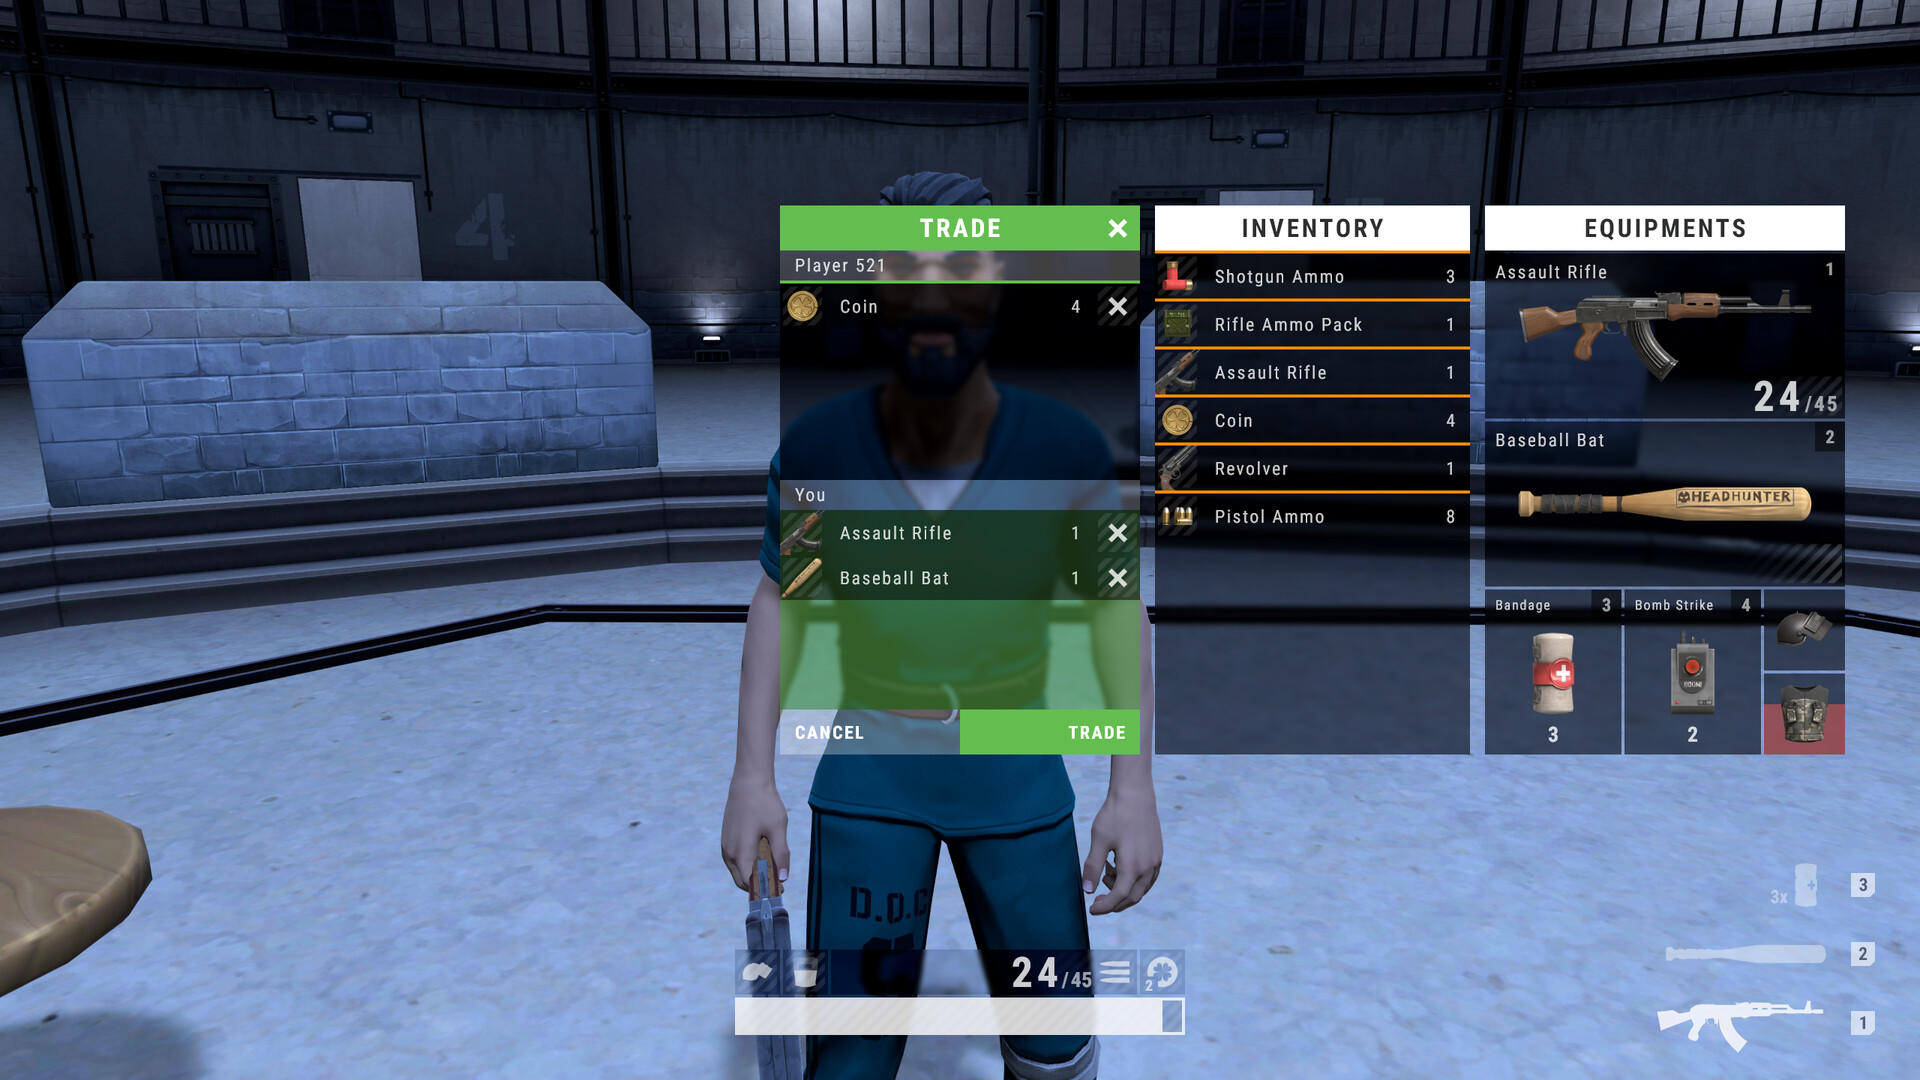 Prisoners screenshot game